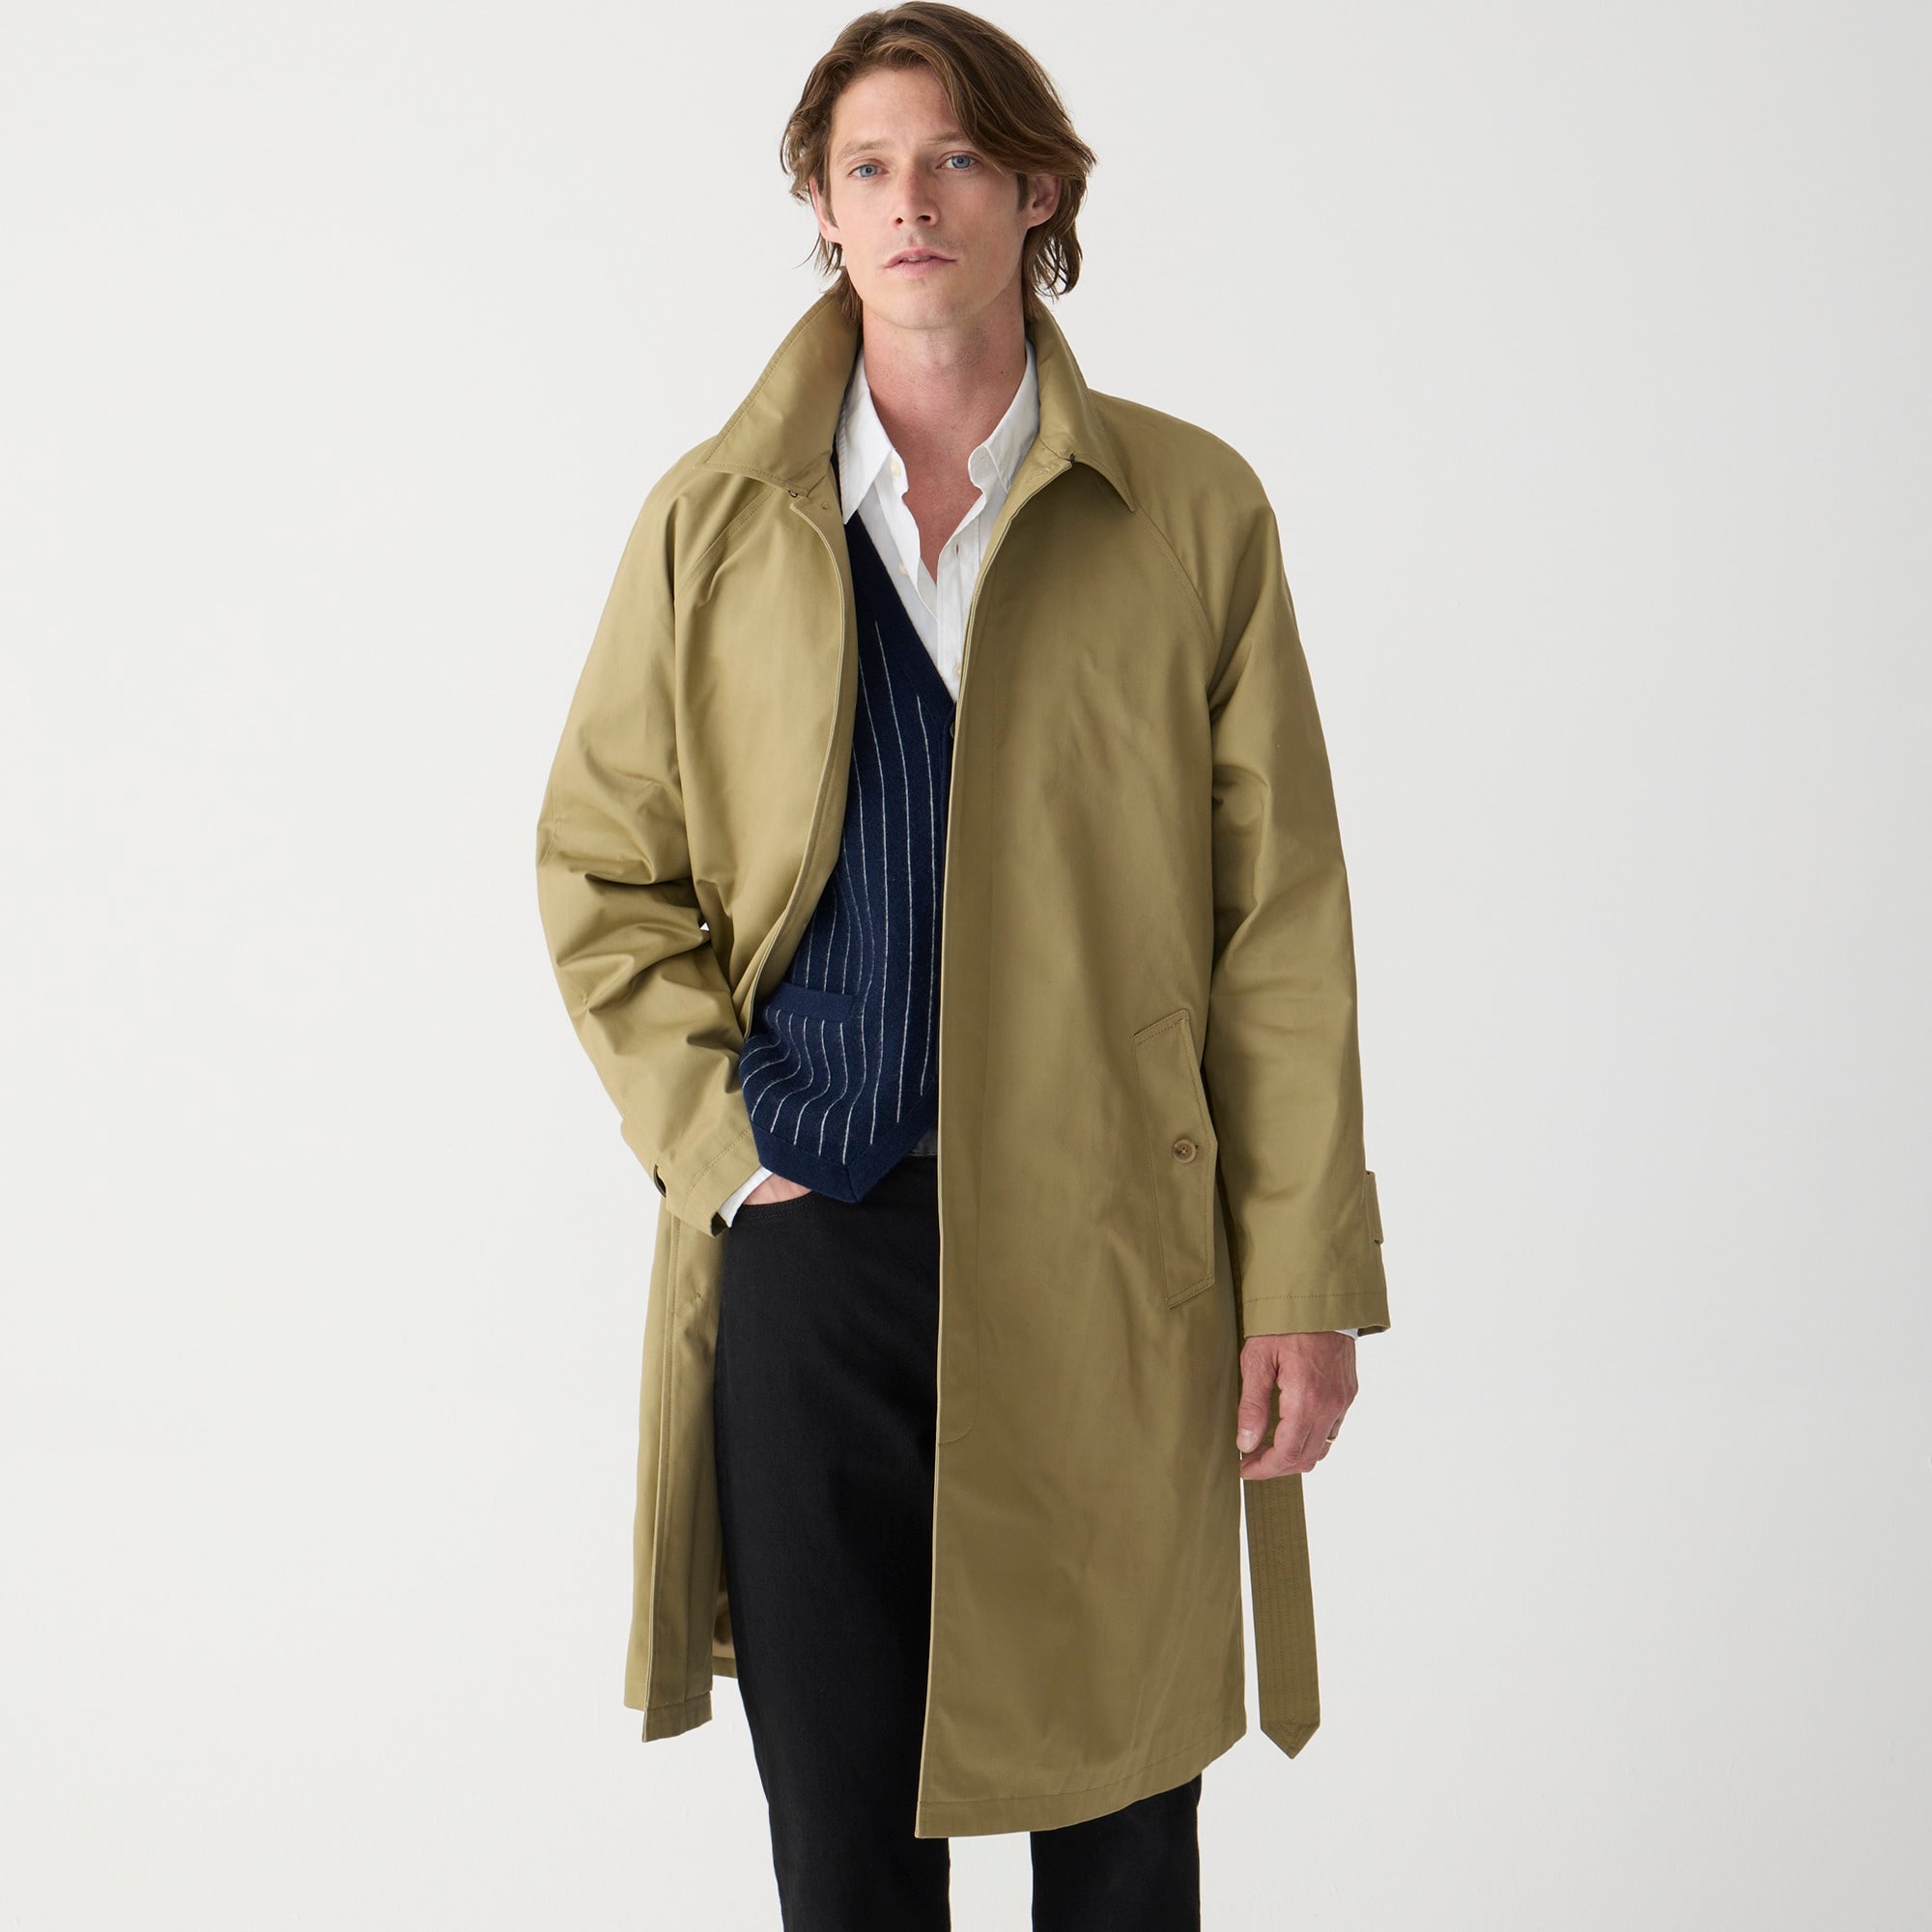 Jcrew Ludlow trench coat in water-resistant cotton